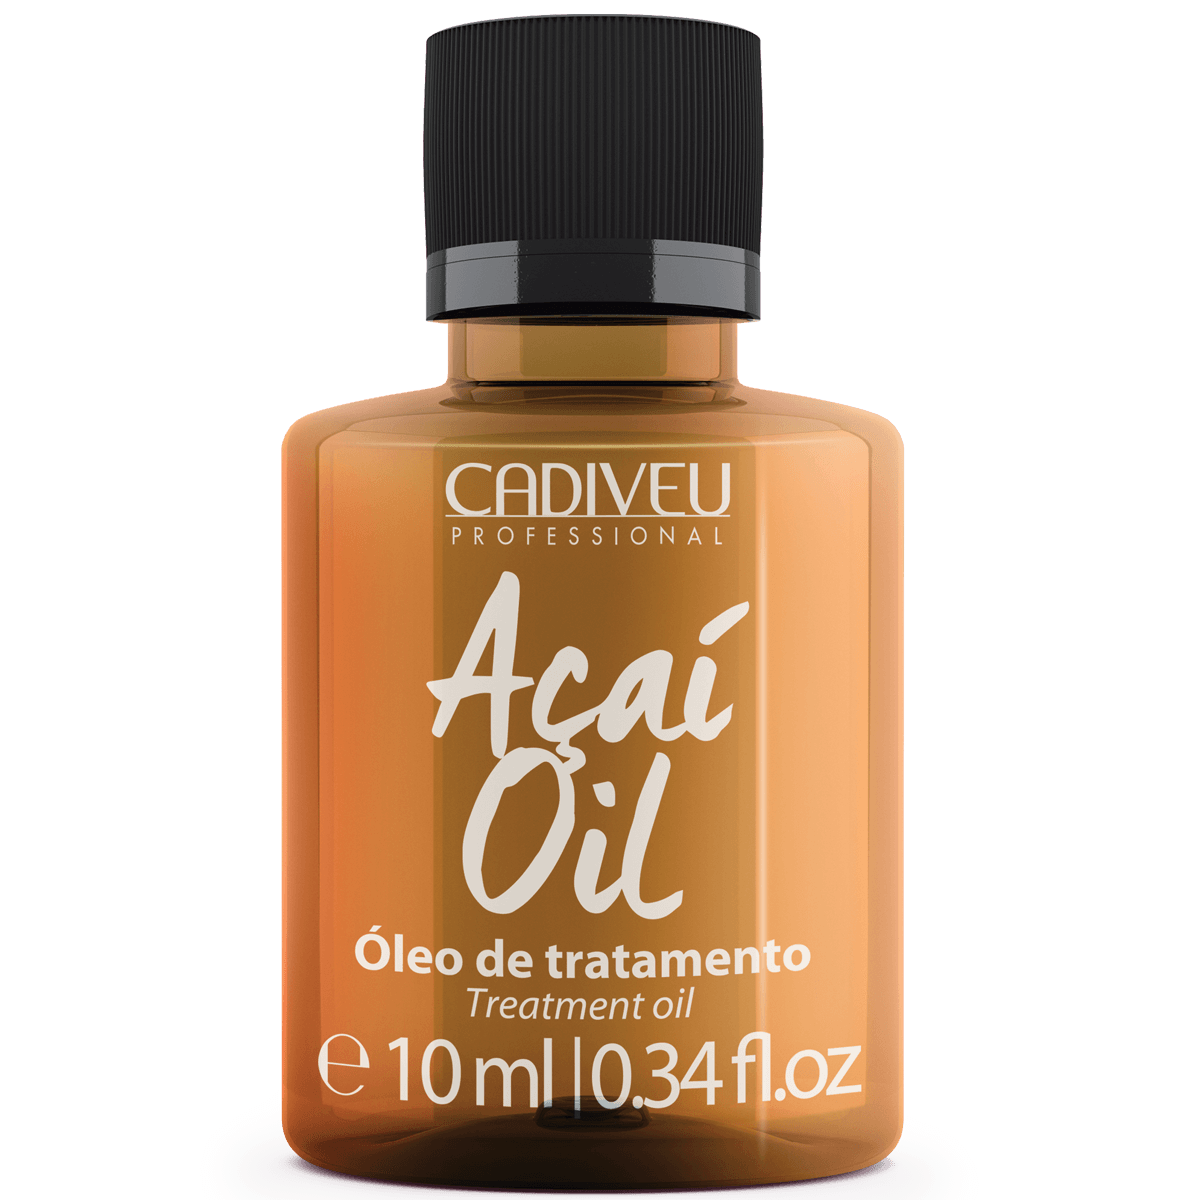 CADIVEU - Acai Treatment, Oil 10ml